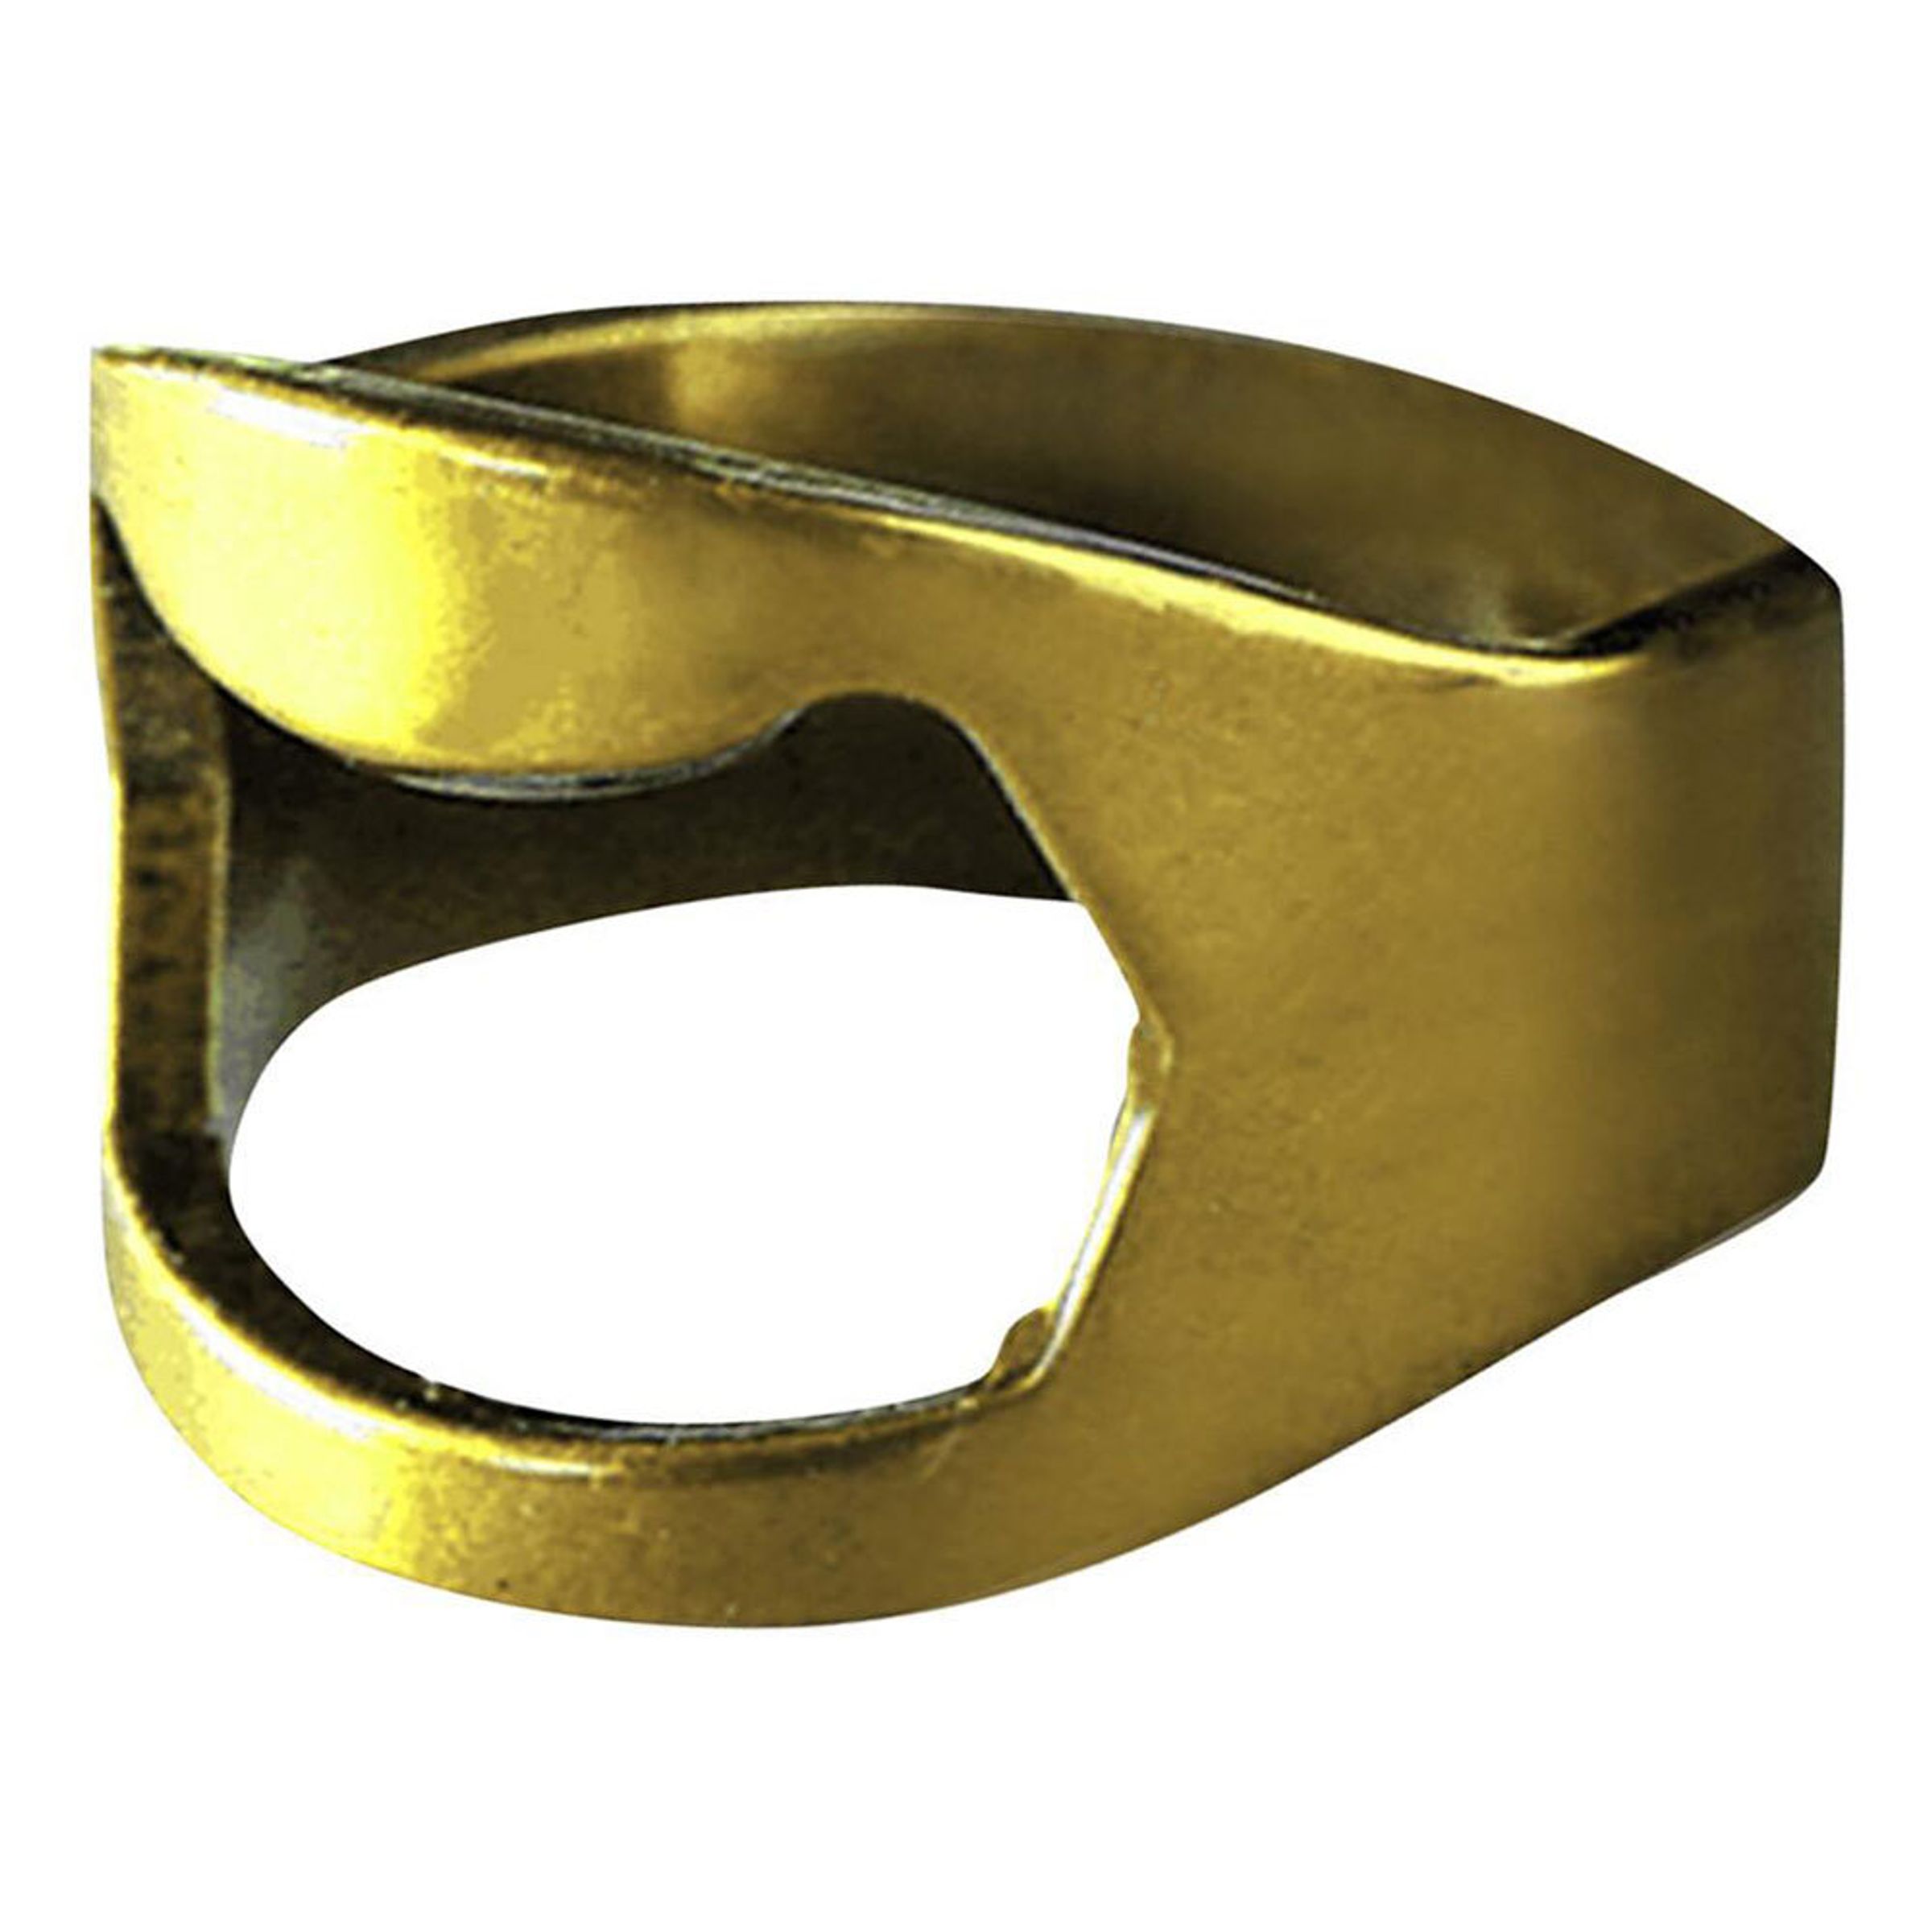 Kapsylöppnare Ring Koppar - 22 mm